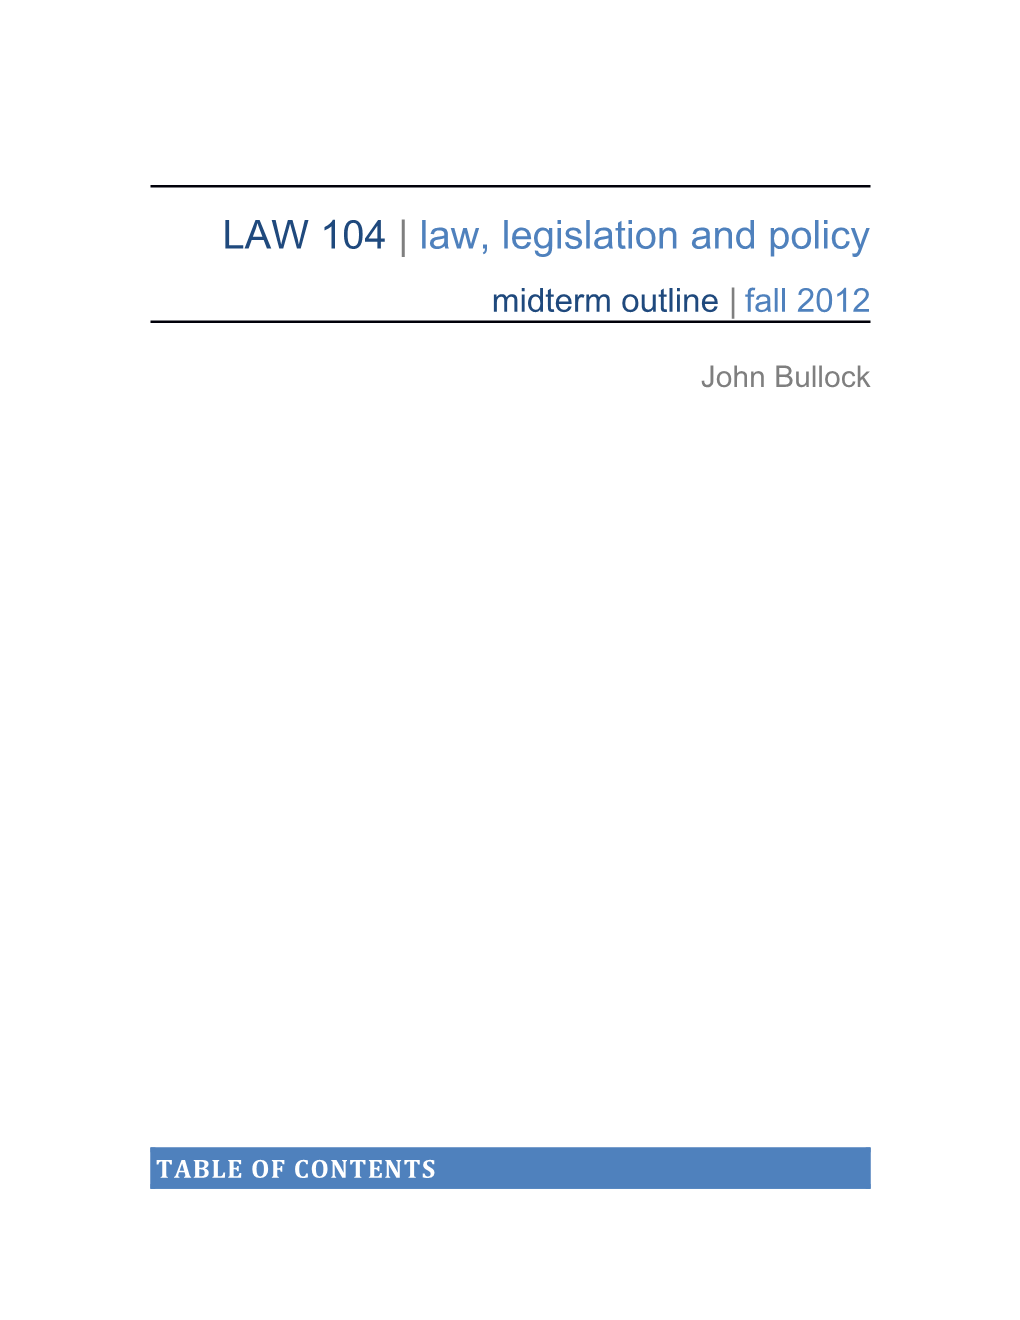 LAW 104 Law, Legislation and Policy